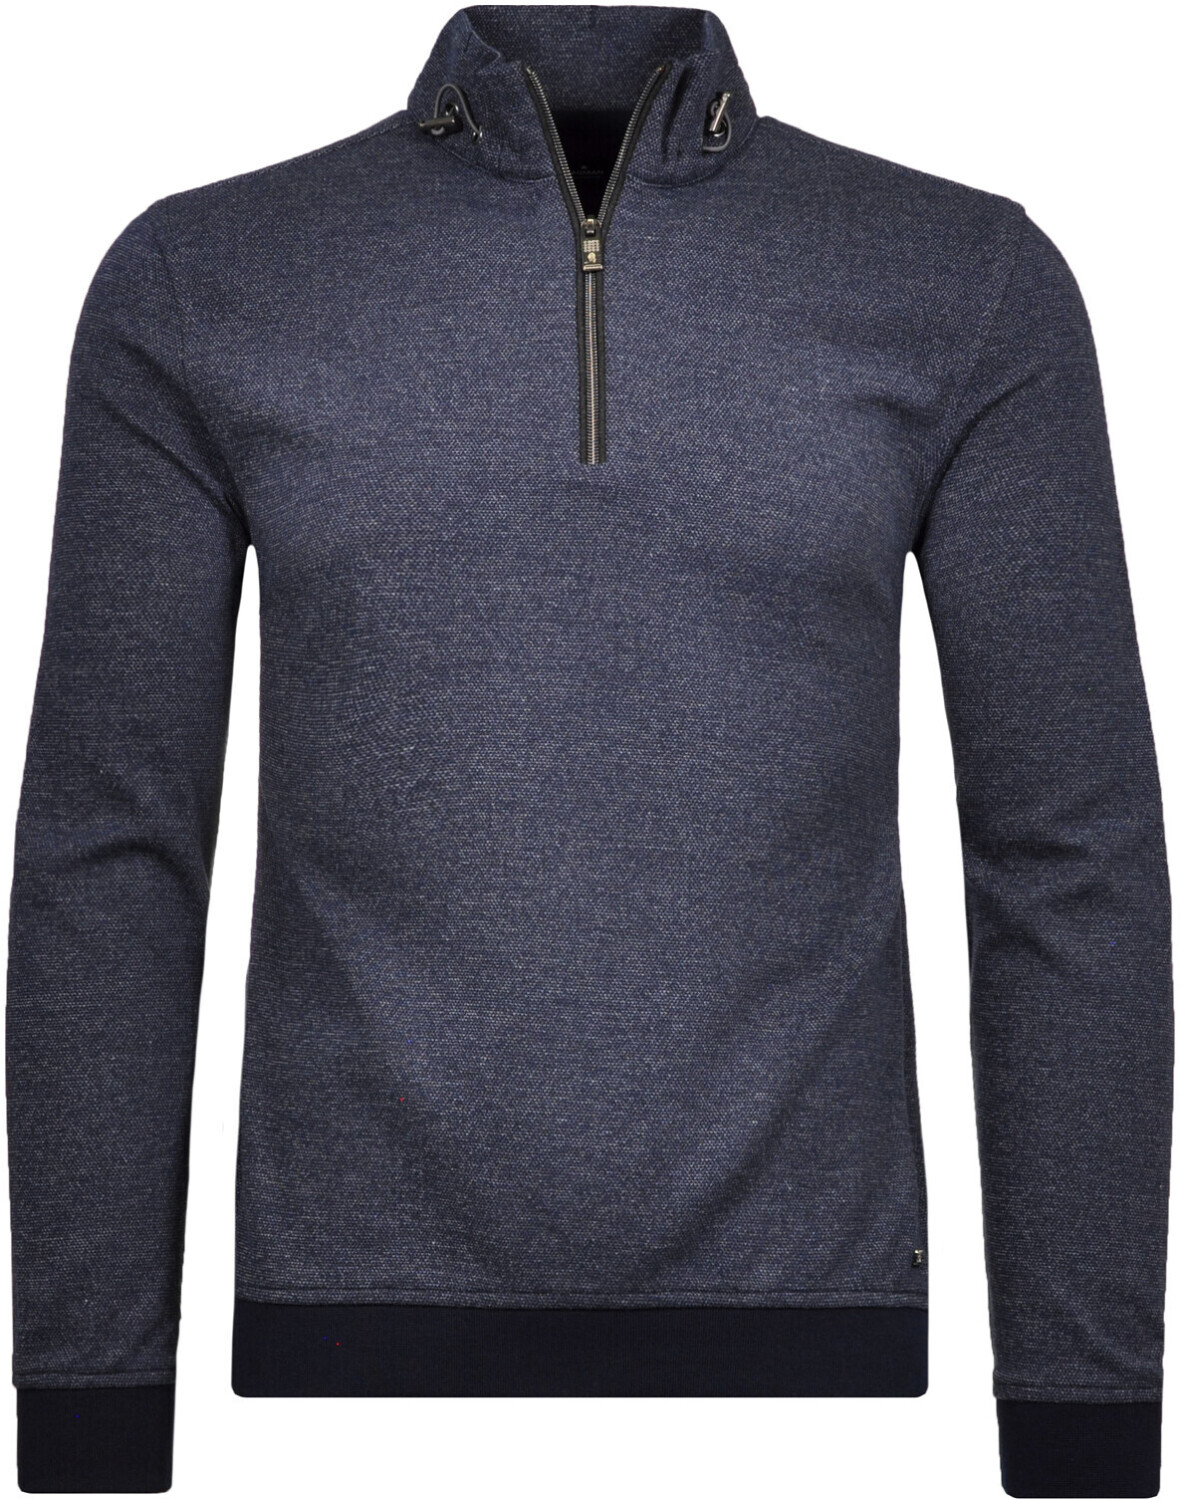 Ragman Sweatshirt mit Stehkragen (981060-711) dunkelblau ab 80,70 € |  Preisvergleich bei